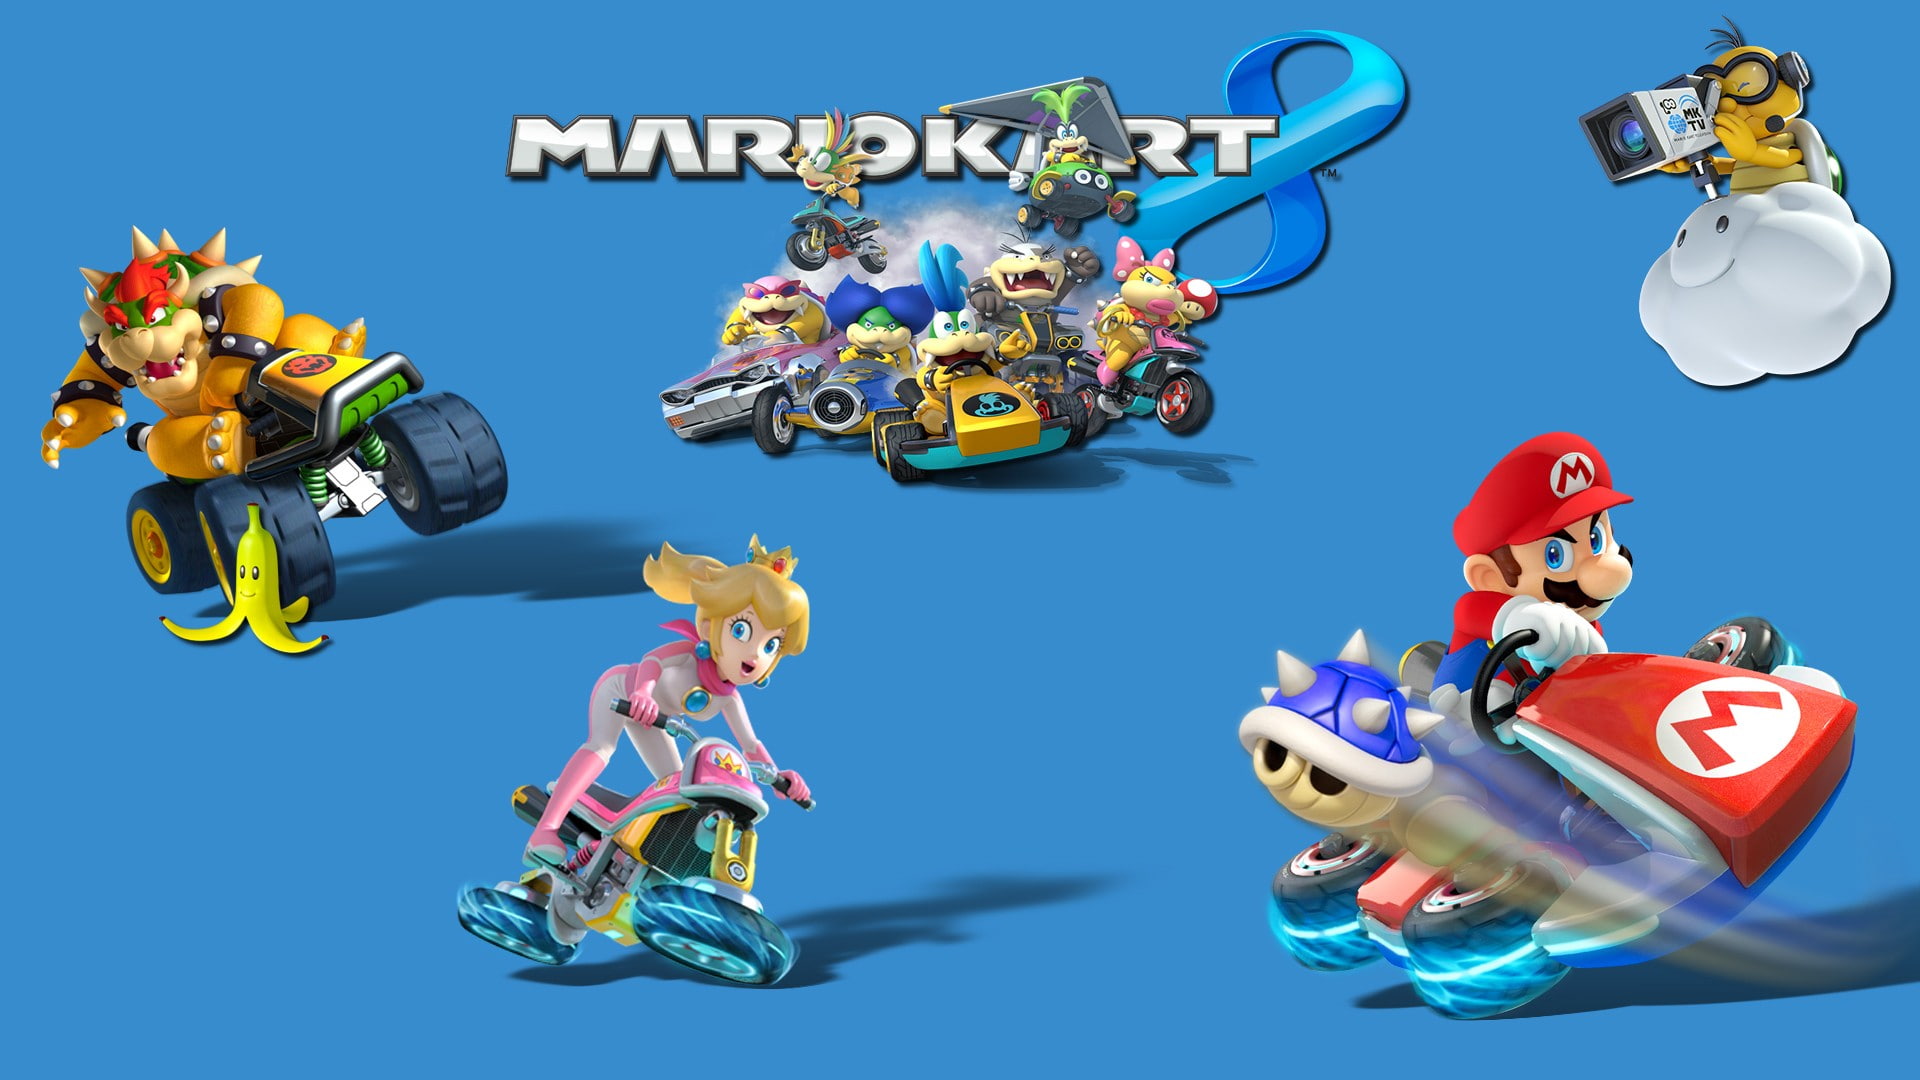 Mario Kart 8, video games, Toad (character), Mario Bros., Princess Peach